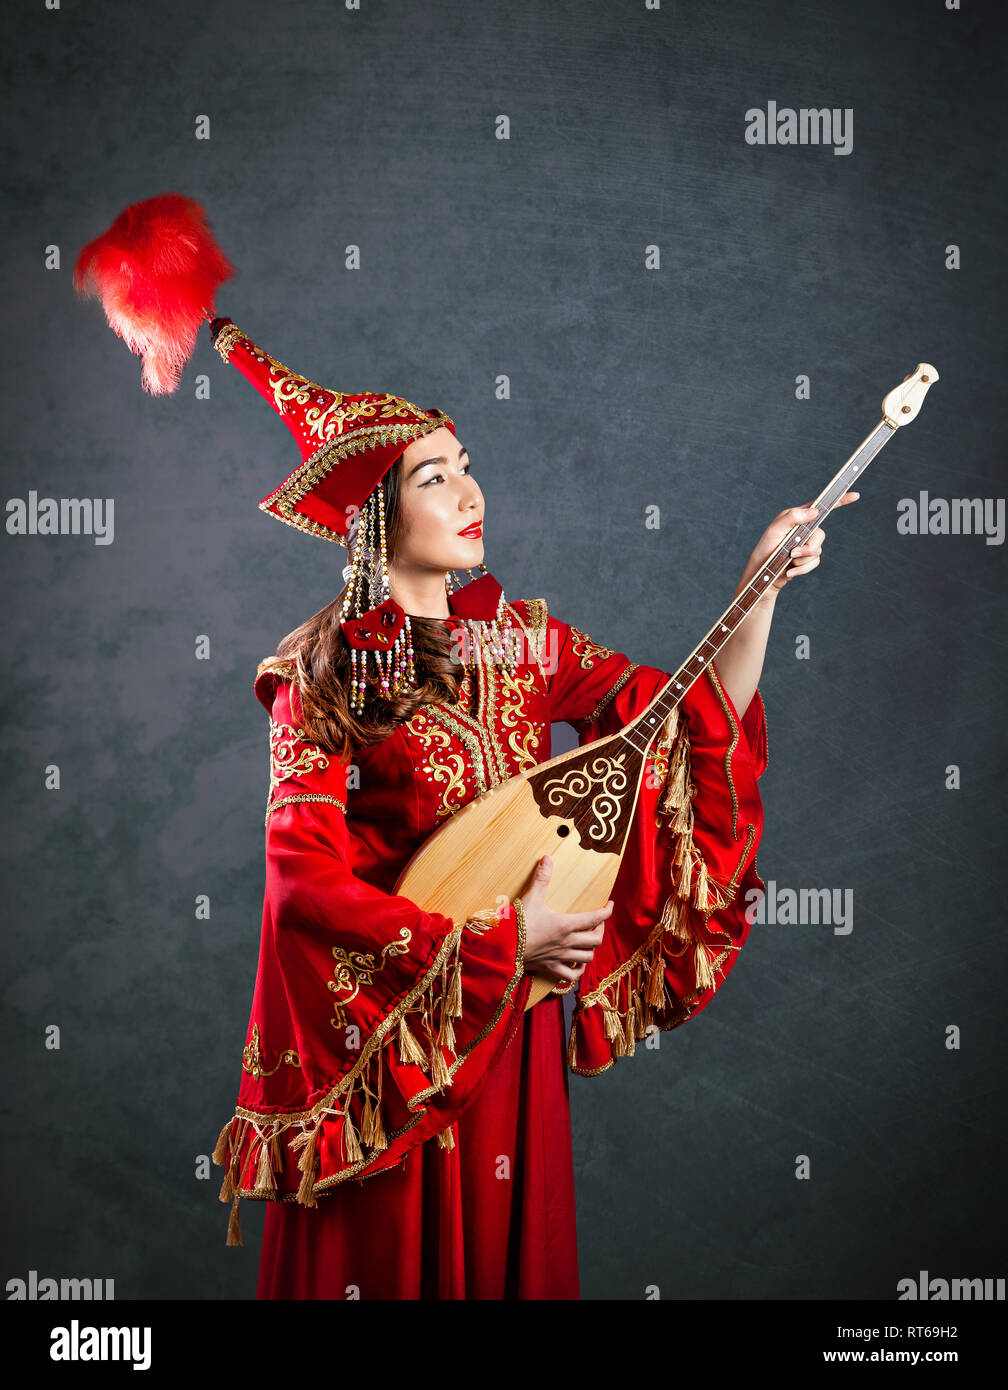 Kasachischen Frau in Rot Kostüm spielen dombra Kasachischen Musical Instrument am grauen Hintergrund Stockfoto